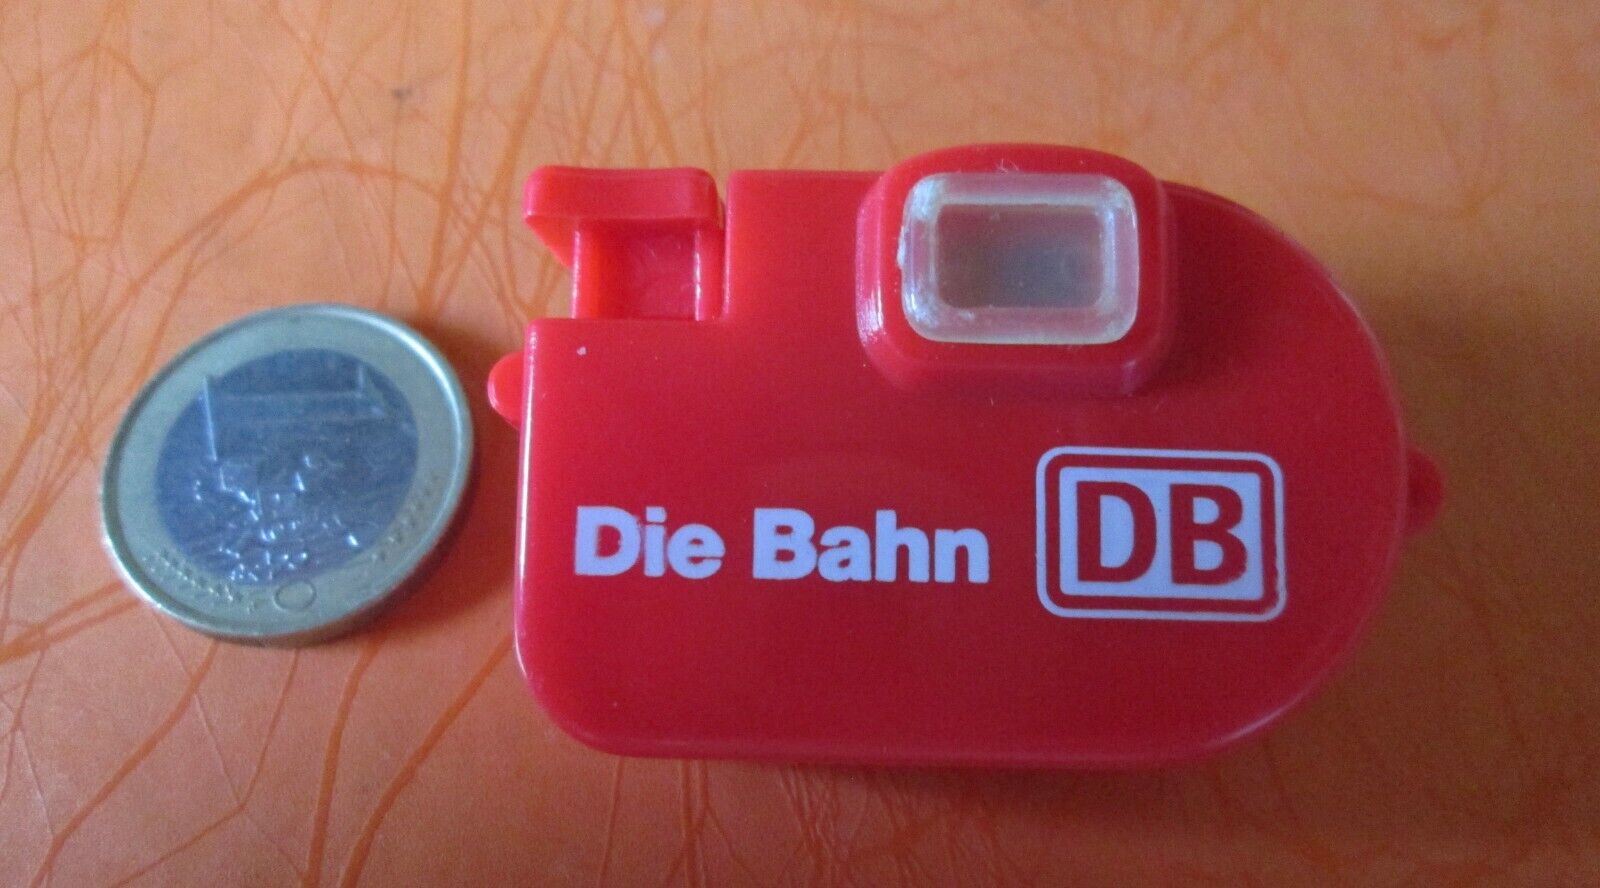 Deutsche Bahn Die Bahn 